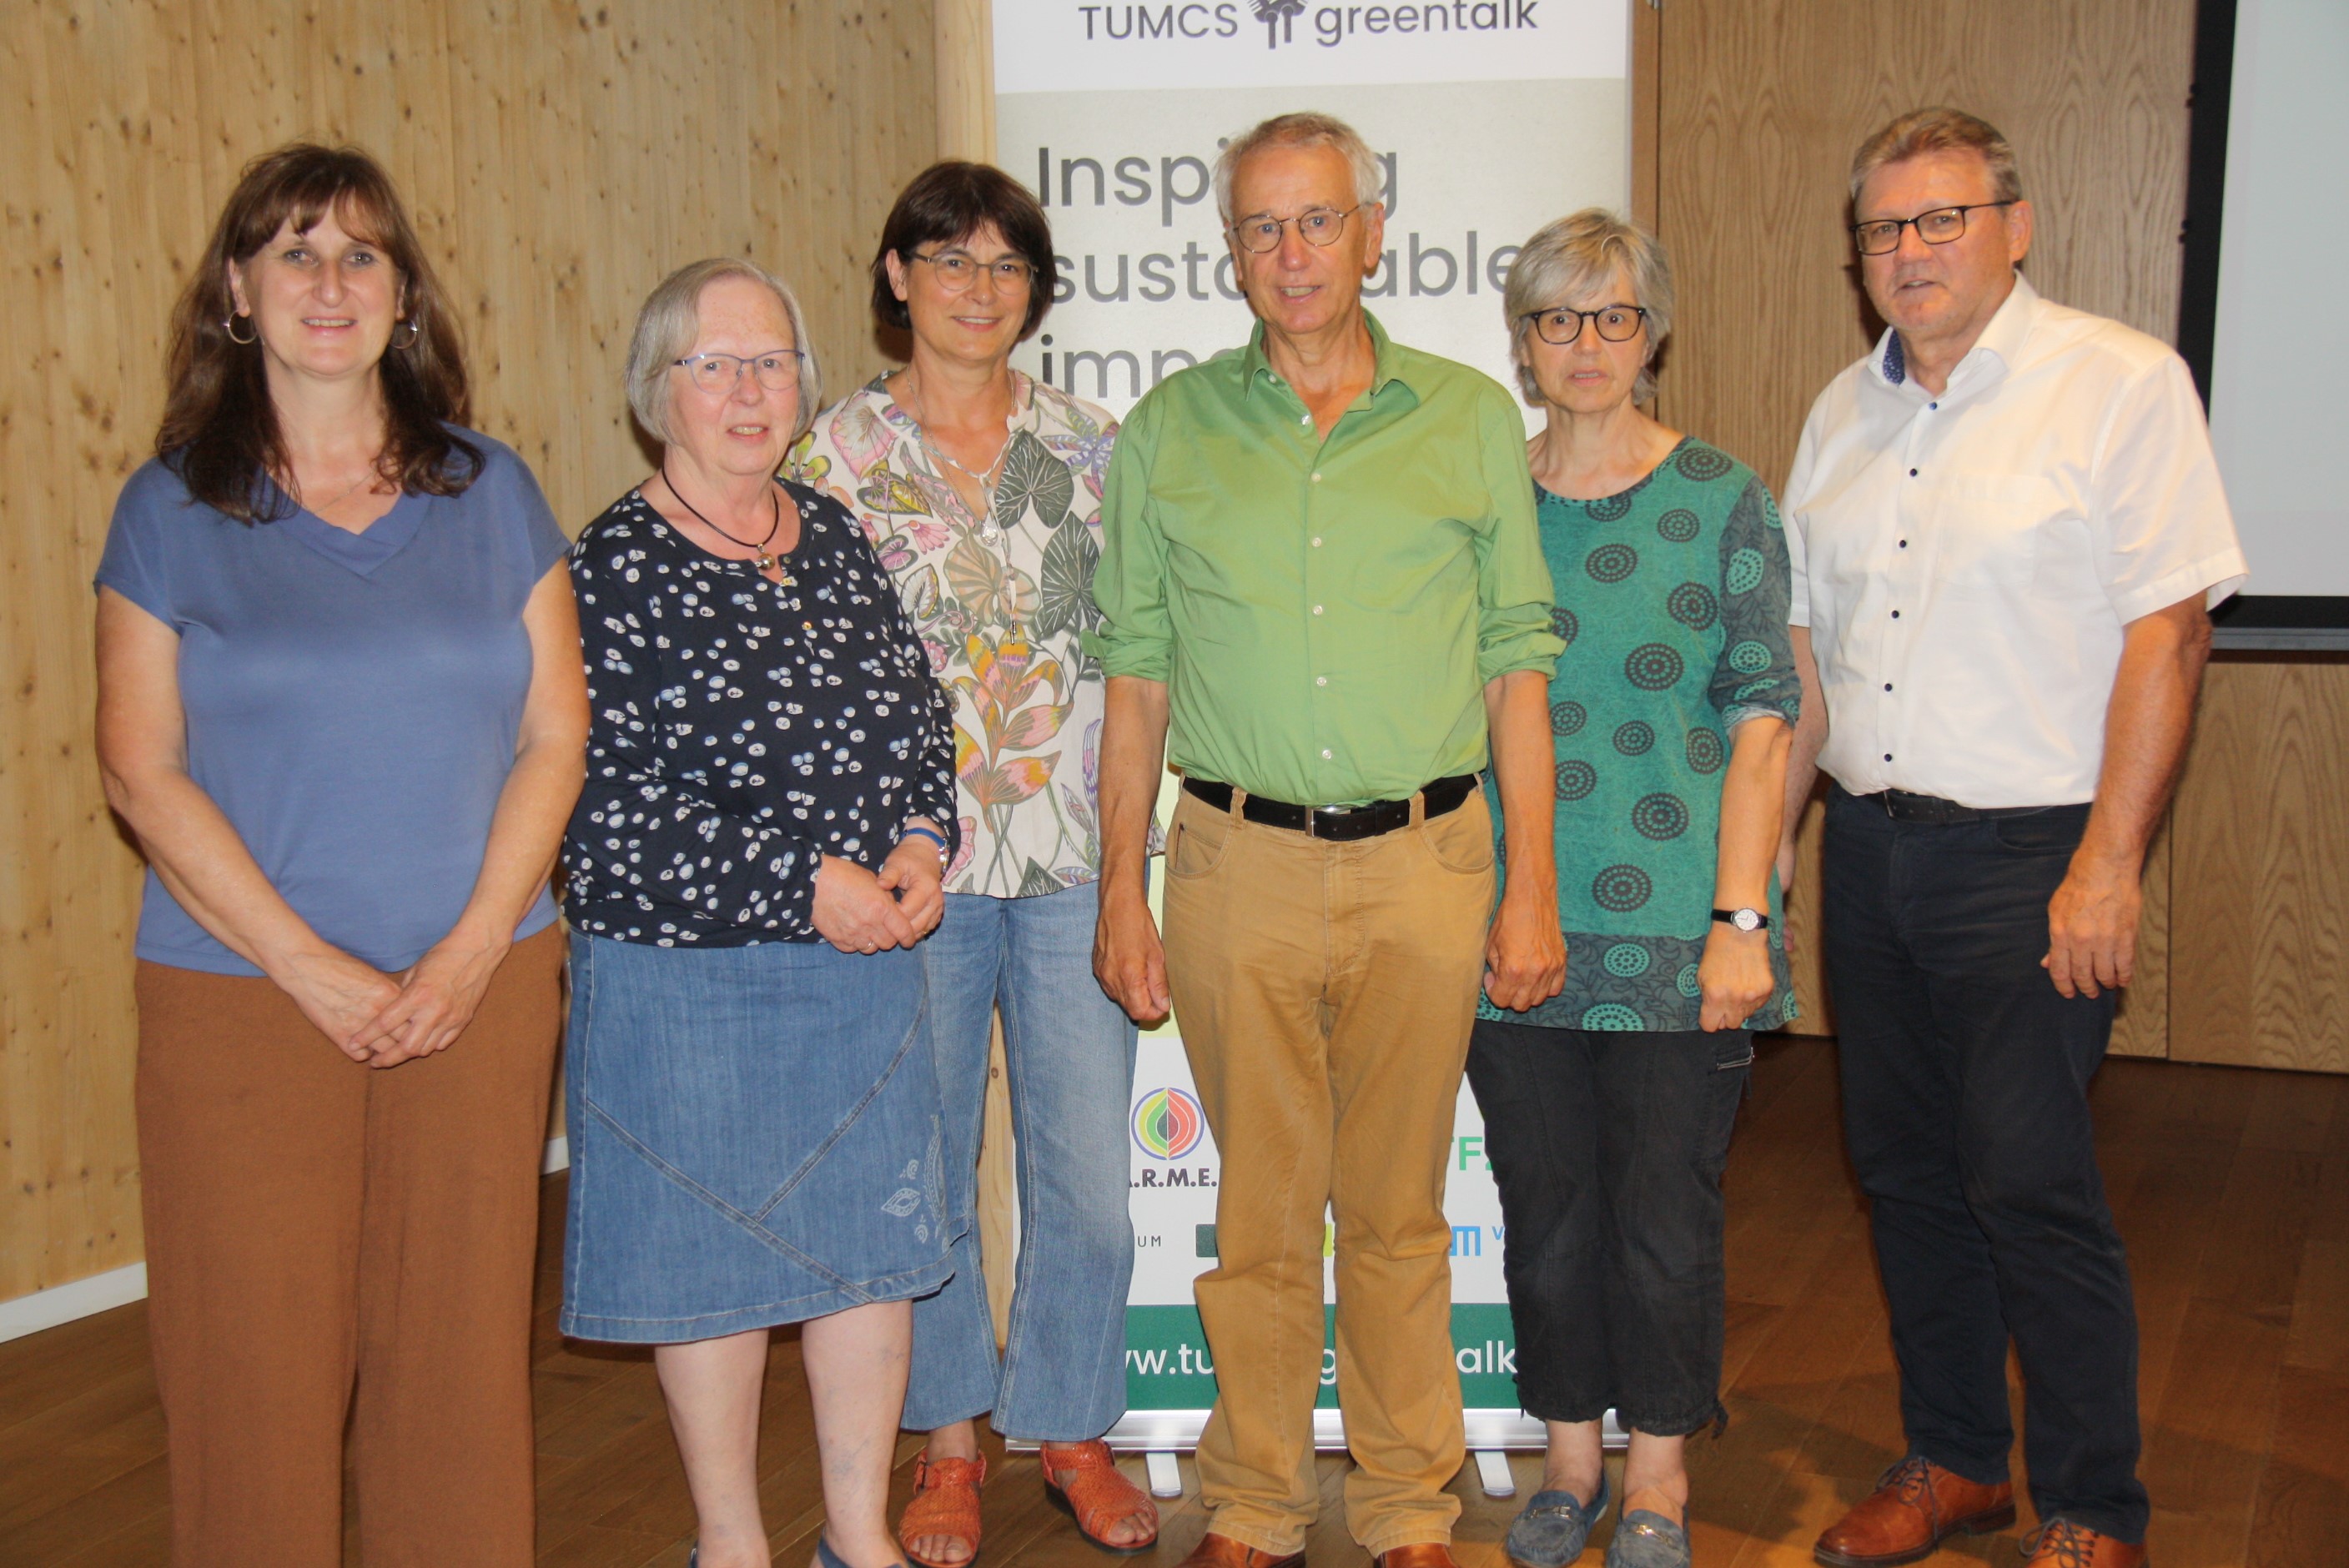 Fairtrade-Gruppe des Landkreises zu Gast beim TUM-Campus-Greentalk